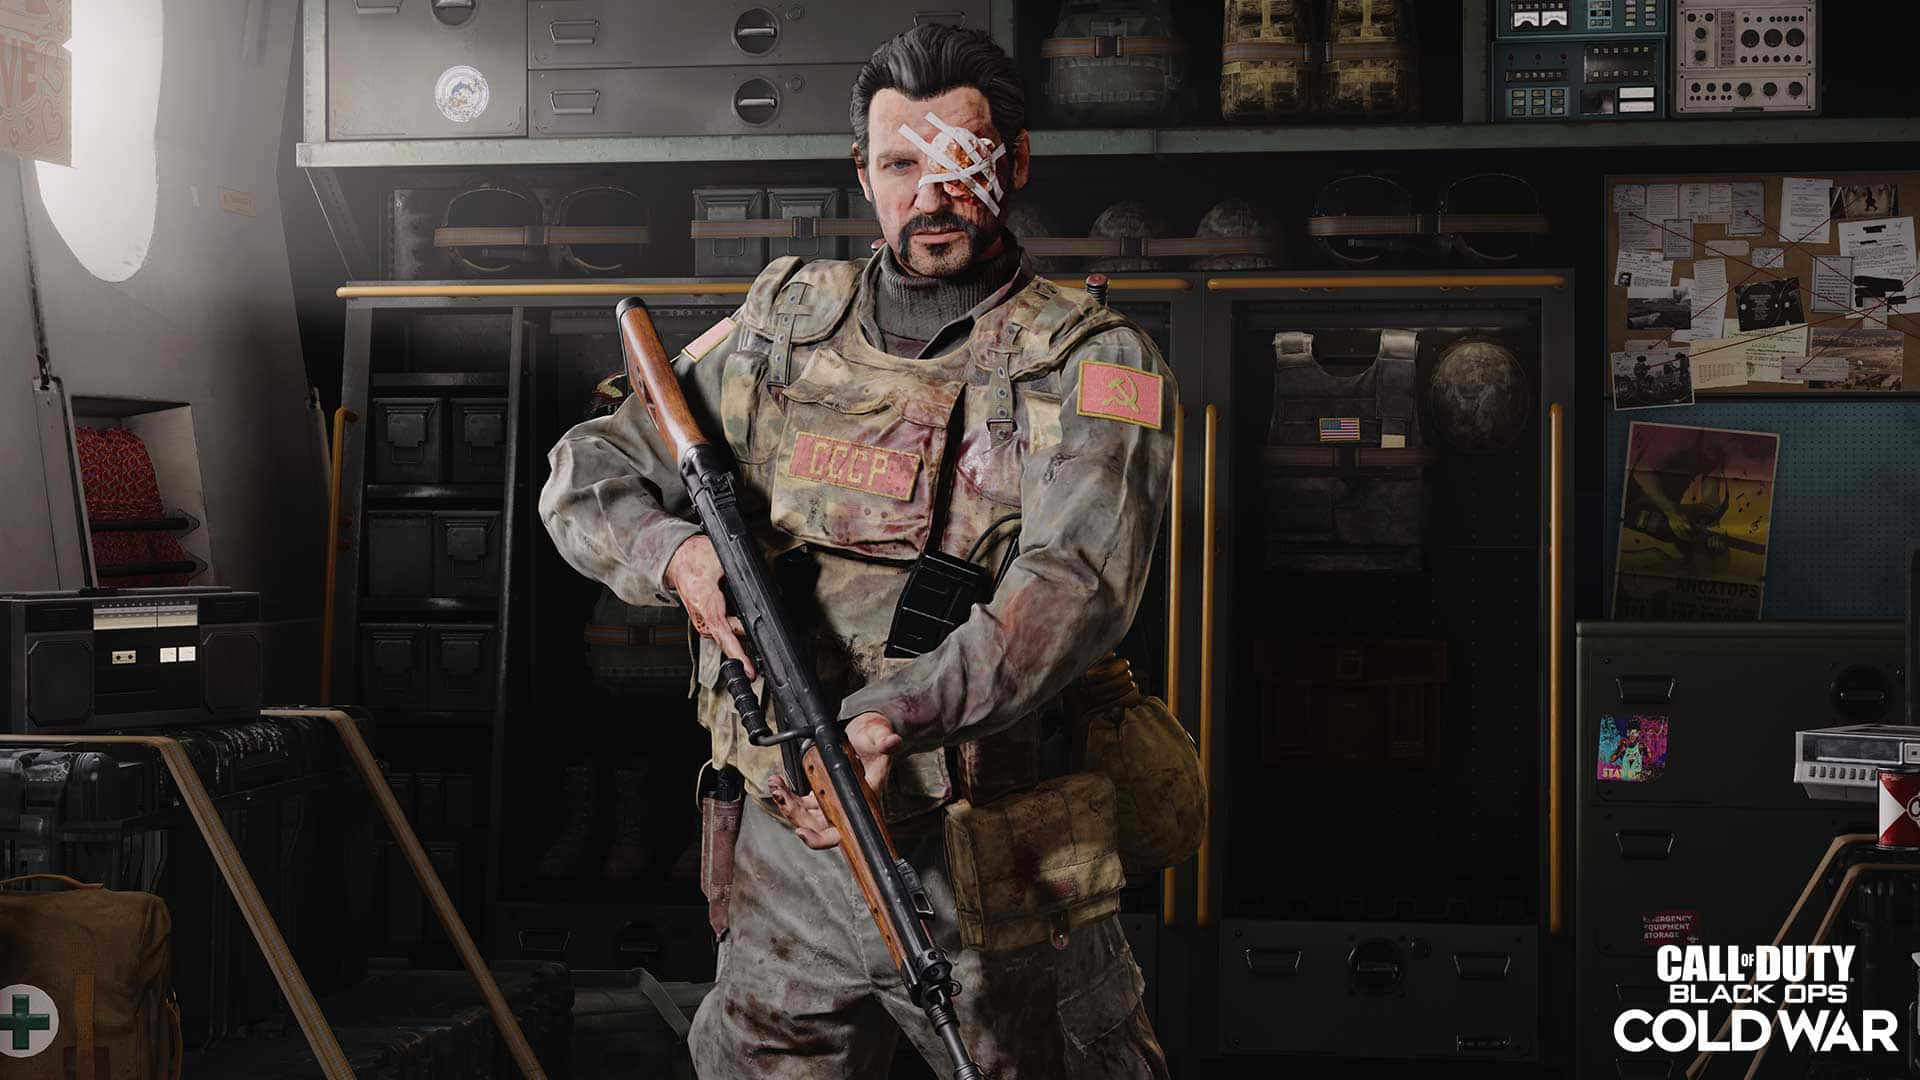 Erlebedas Adrenalin Des Kampfes Mit Call Of Duty Black Ops Cold War.